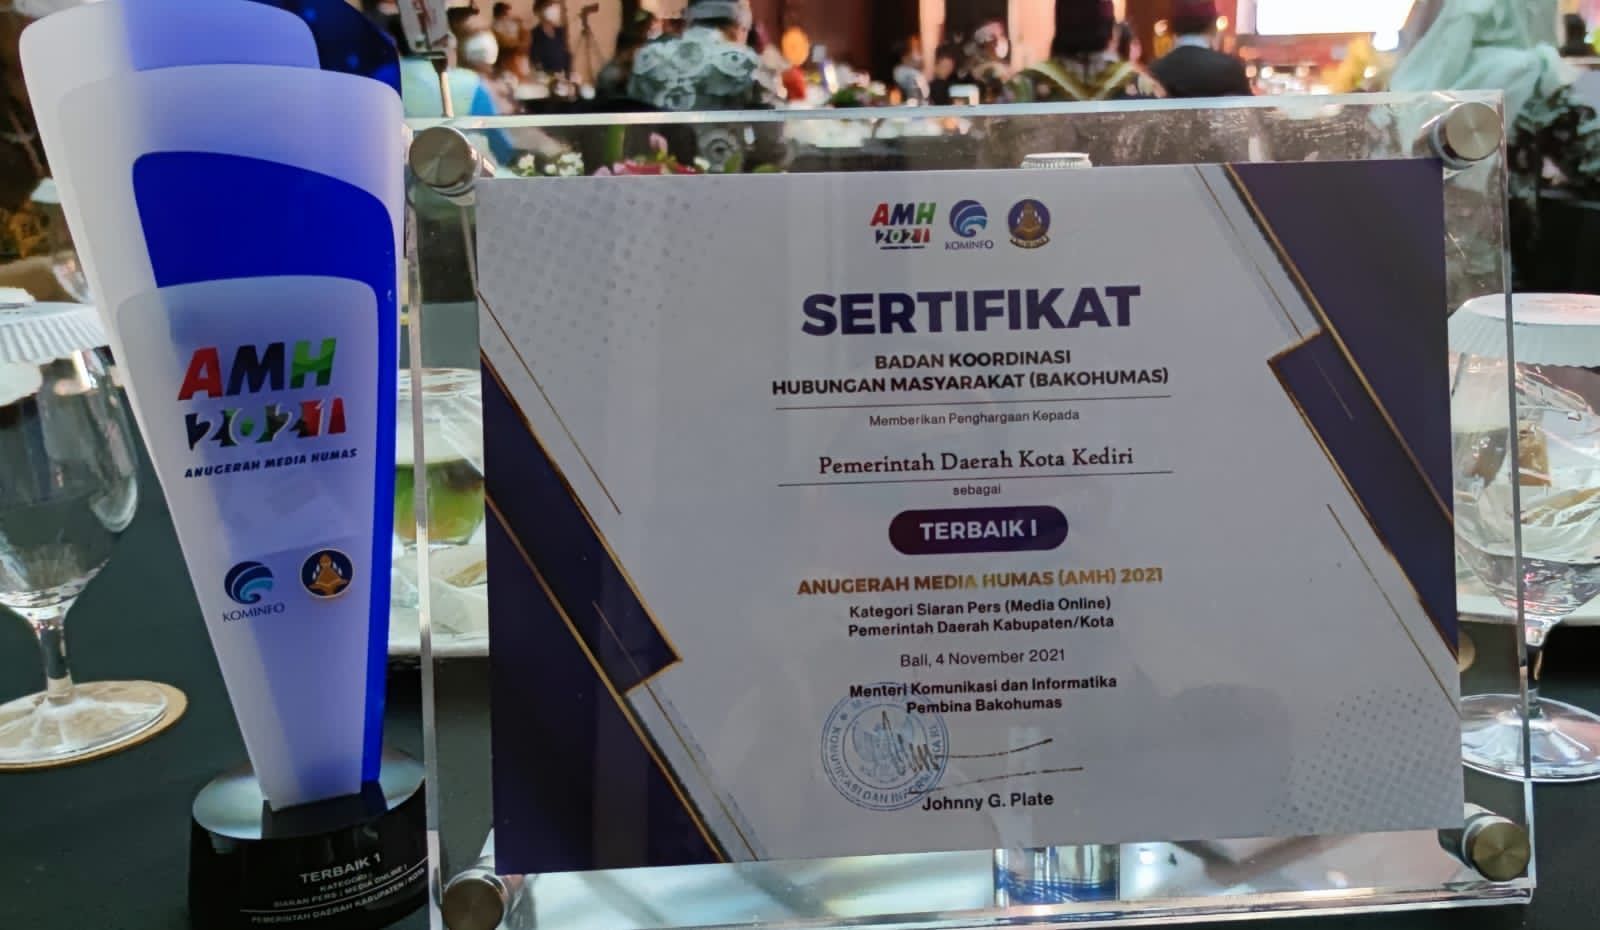 Penghargaan Terbaik 1 dalam kategori "Siaran Pers Media Online Pemerintah Daerah Kabupaten/Kota" yang diraih Kota Kediri pada Kamis malam (04/11/2021). (Foto: Dokumen/Tugu Jatim)